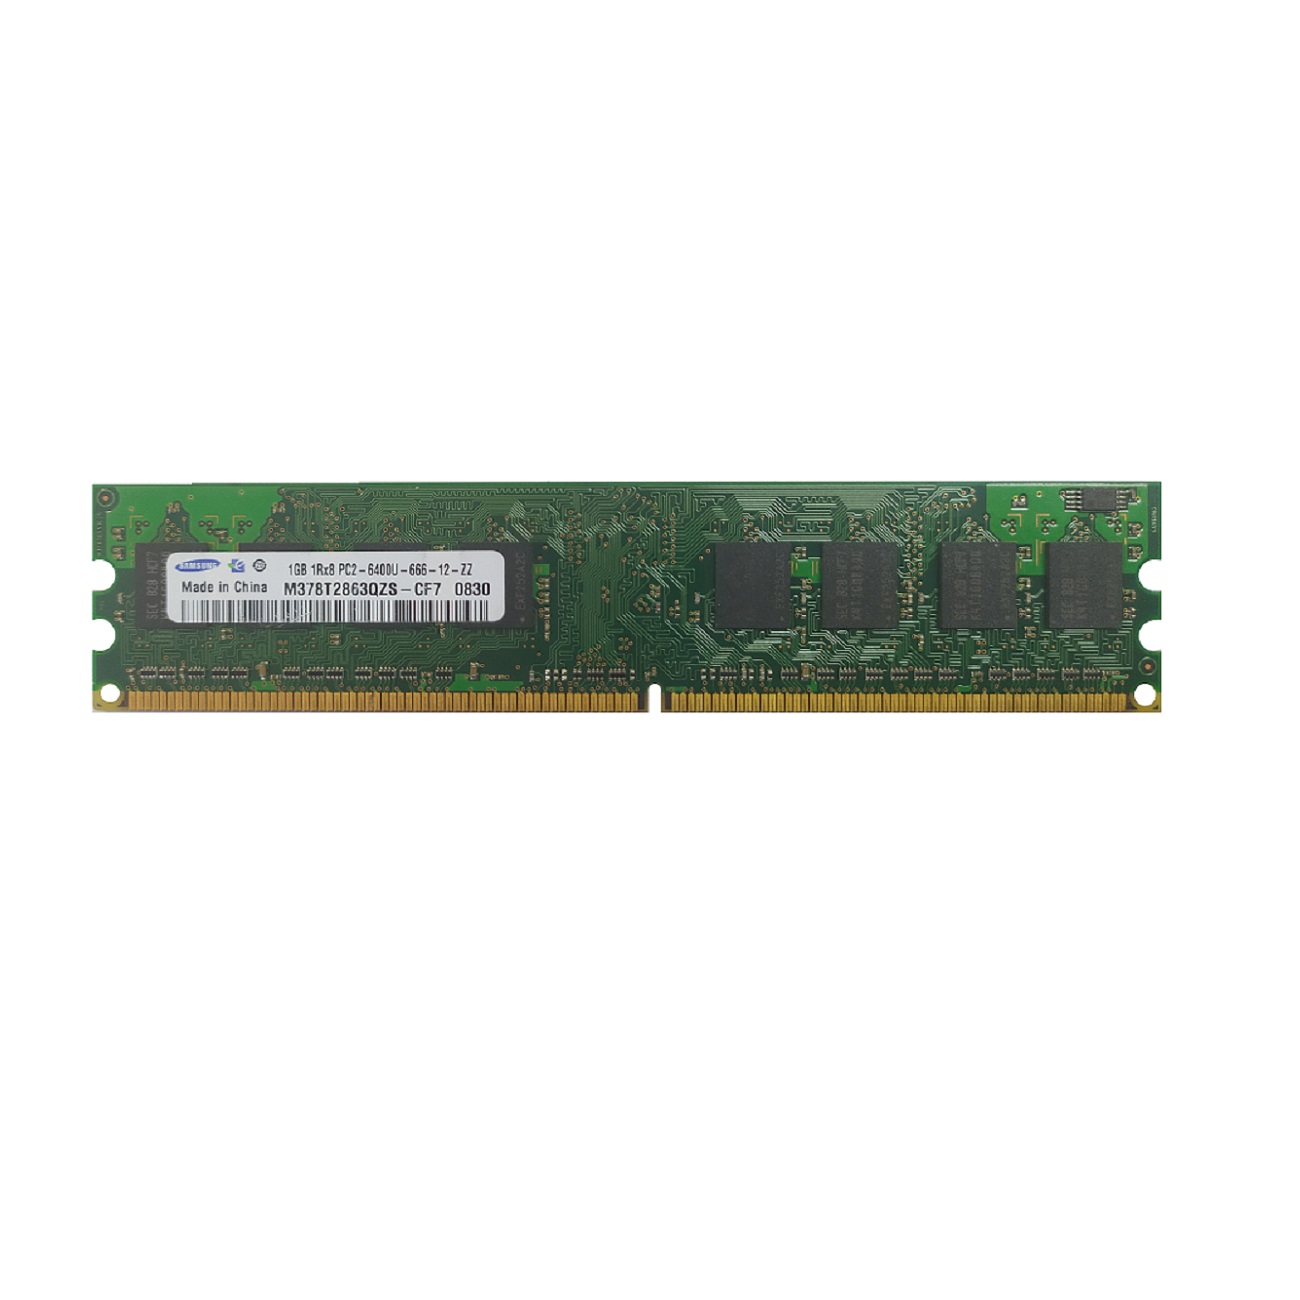 رم دسکتاپ DDR2 تک کاناله 800 مگاهرتز CL5 سامسونگ مدل M378T2863QZS ظرفیت 1 گیگابایت